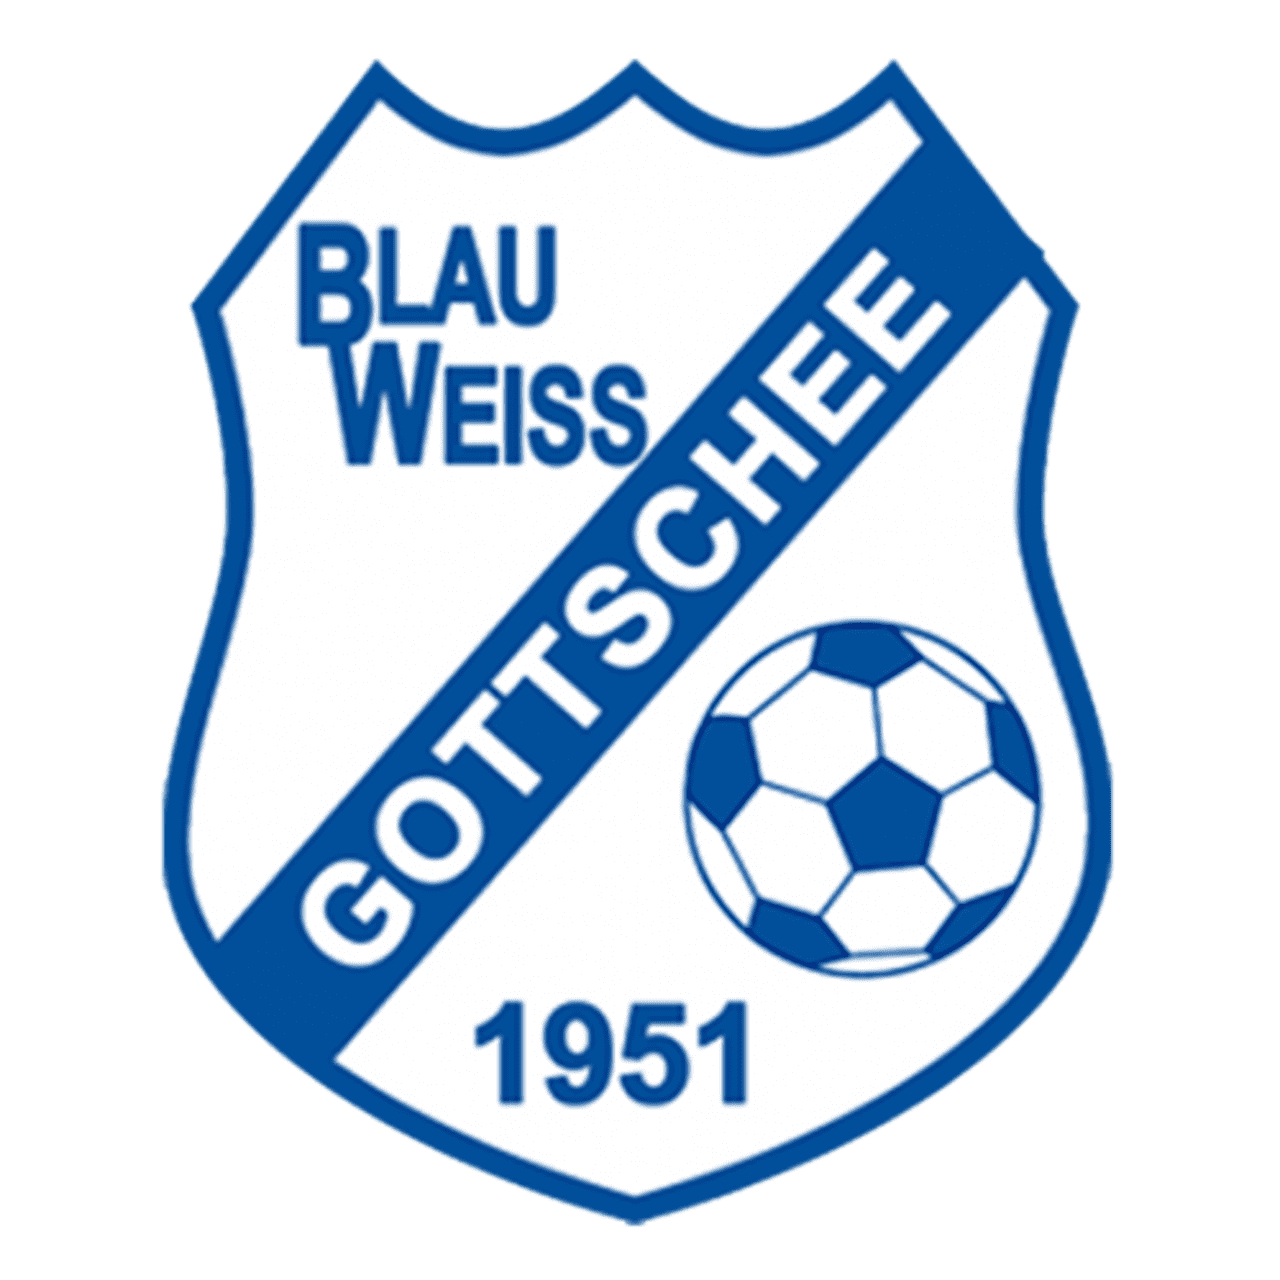 blau weiss gottschee logo large edition